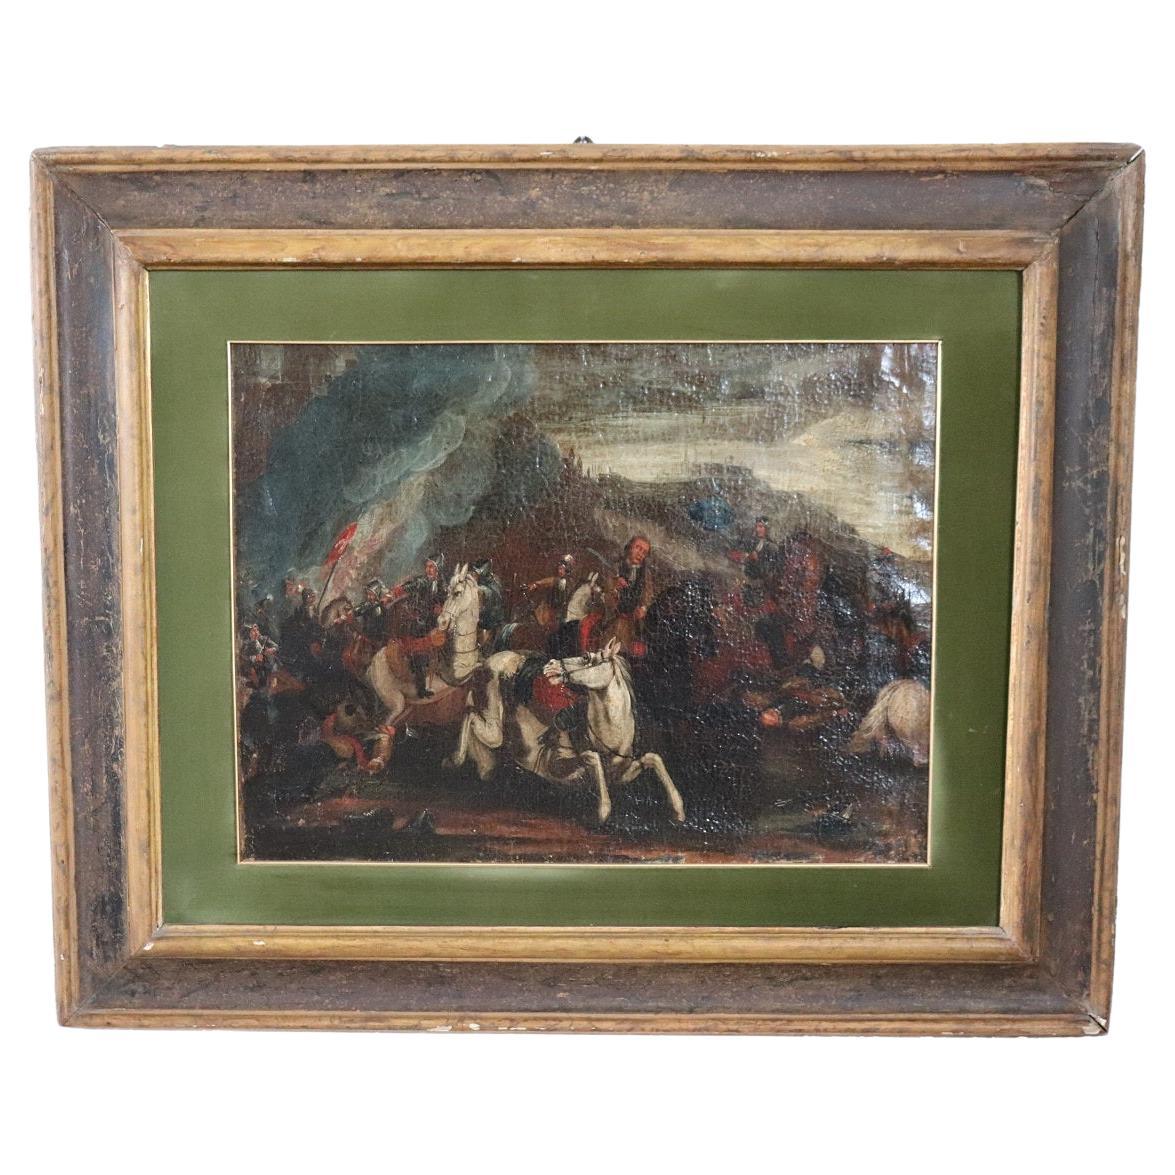 Peinture à l'huile ancienne sur toile du 17ème siècle représentant une bataille avec des hommes à cheval